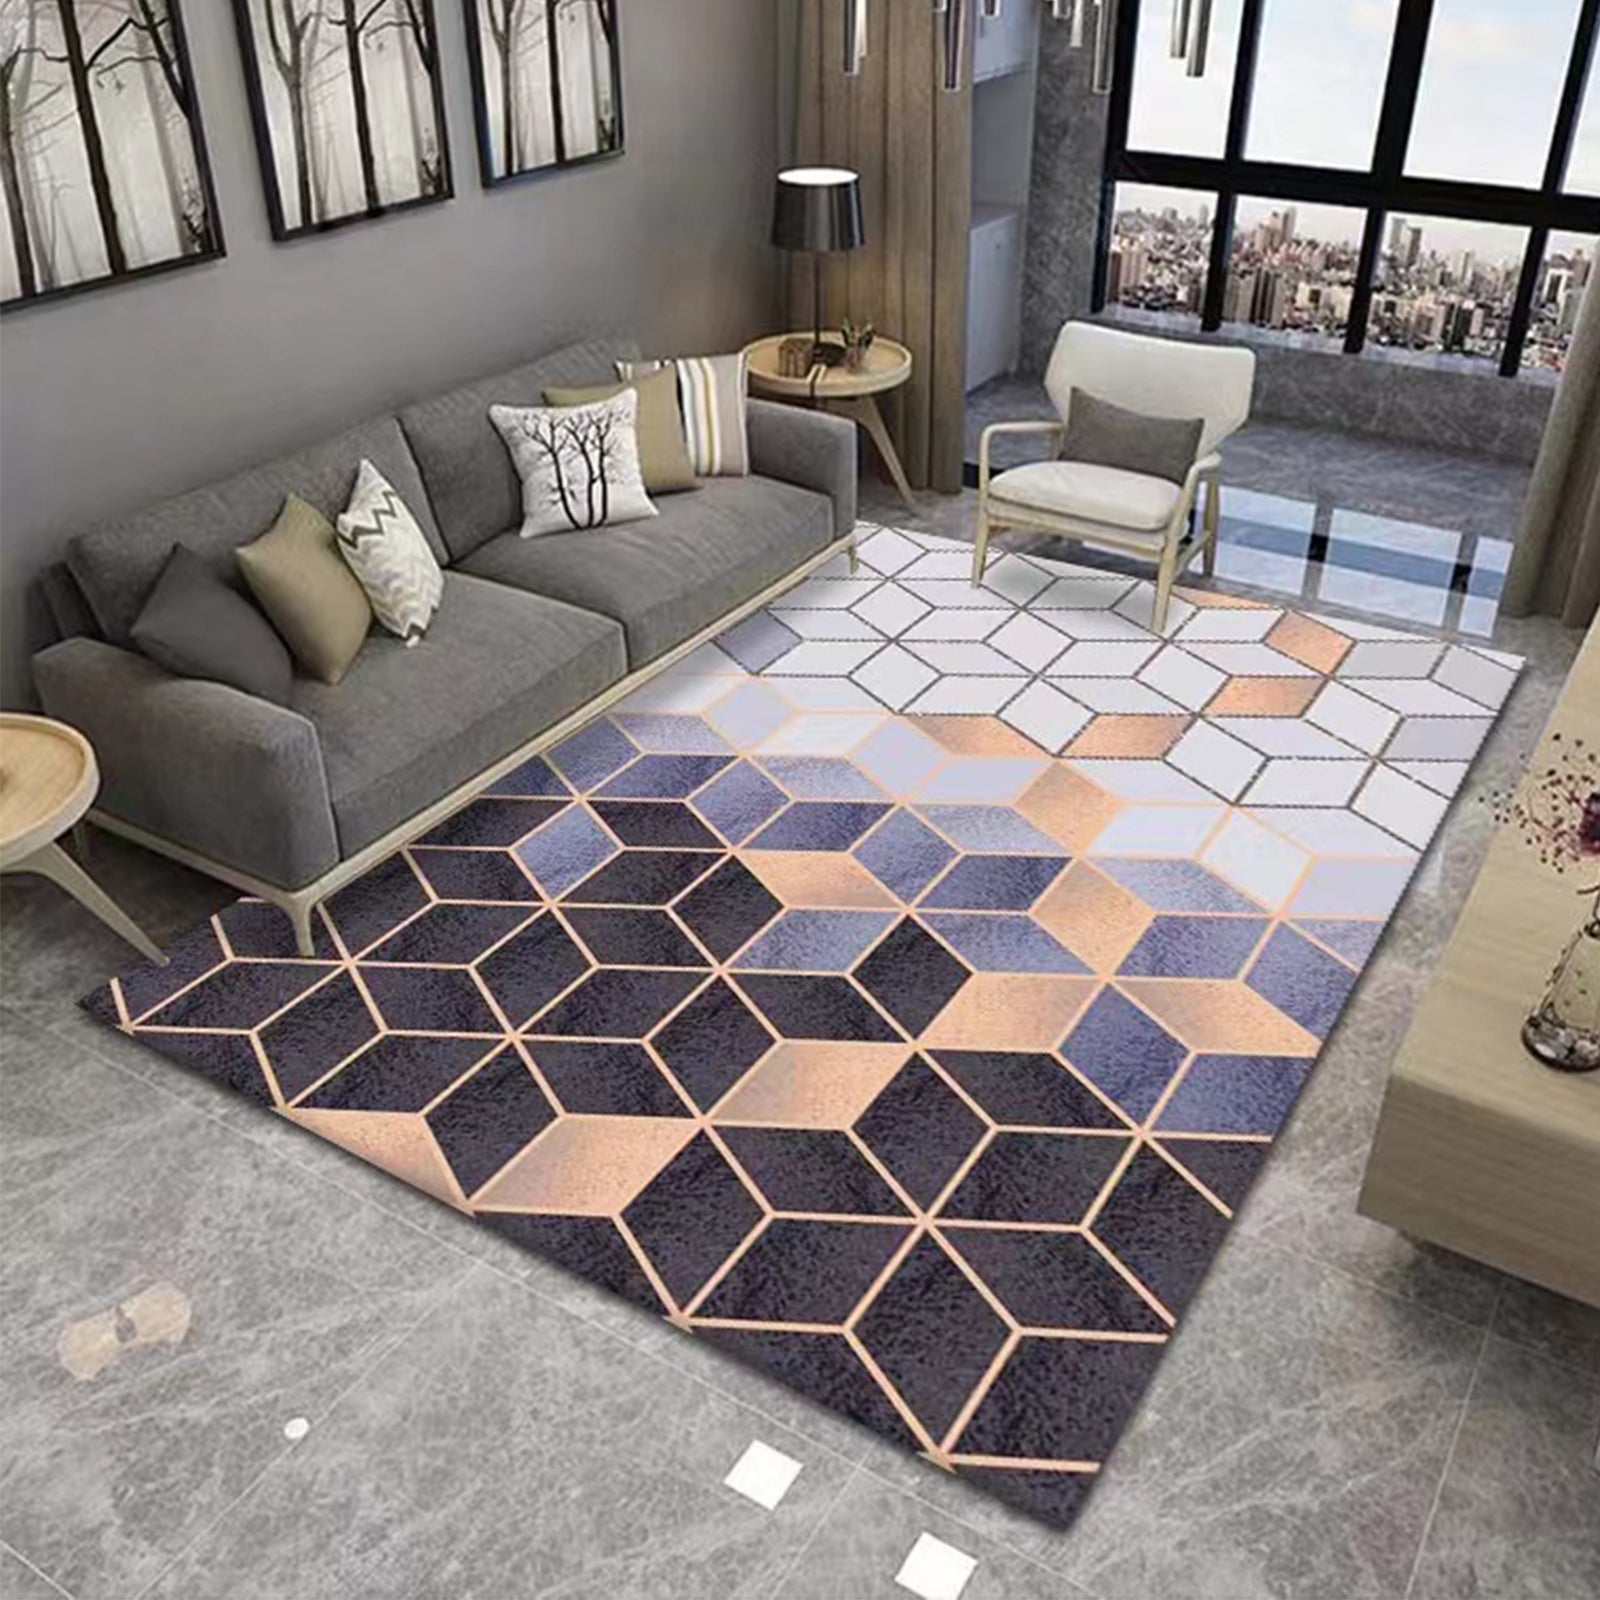 TD® Moderne minimaliste salon table basse géométrique tapis tapis de sol chambre chevet tapis de sol rectangulaire tapis 120*160 cm